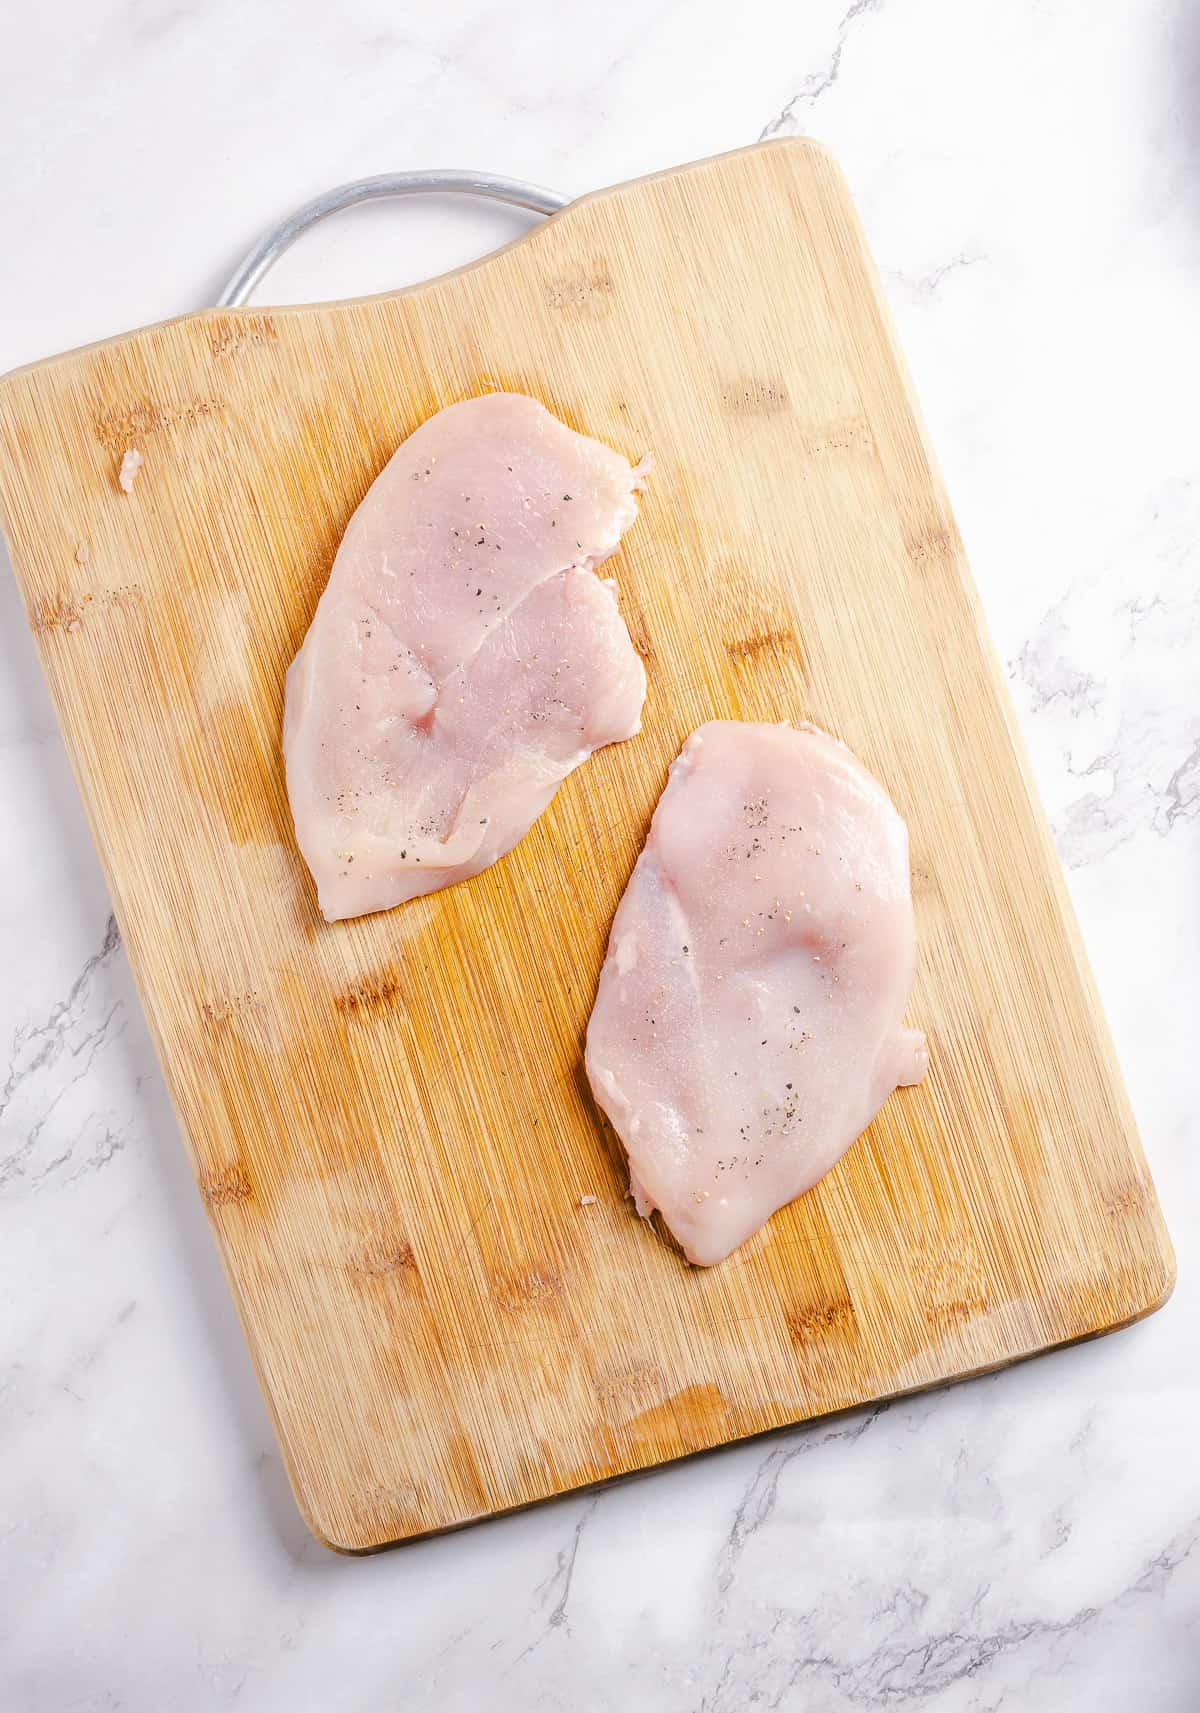 Raw chicken breast on a cutting board.